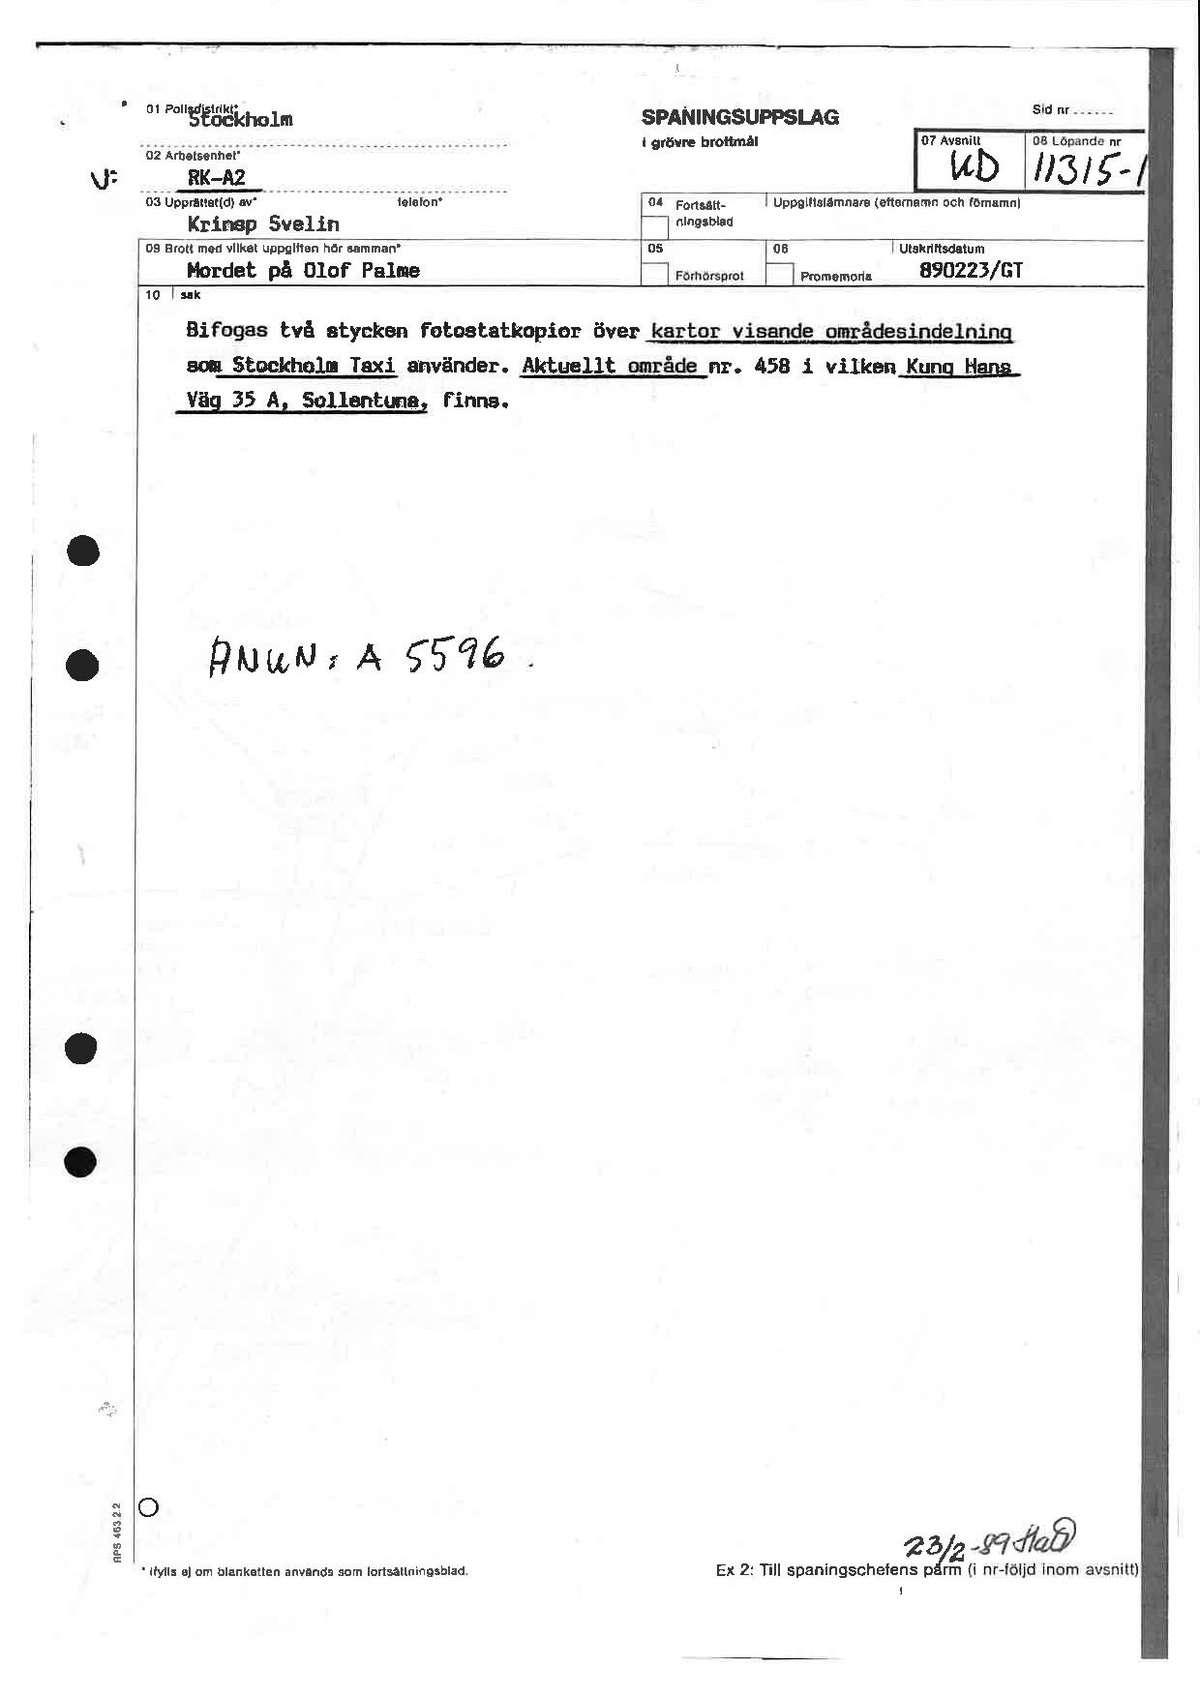 Pol-1989-02-23 KD11315-01 kontroll-av-uförd-taxiresor-utförda-mellan-2315-0100-mordnatten.pdf